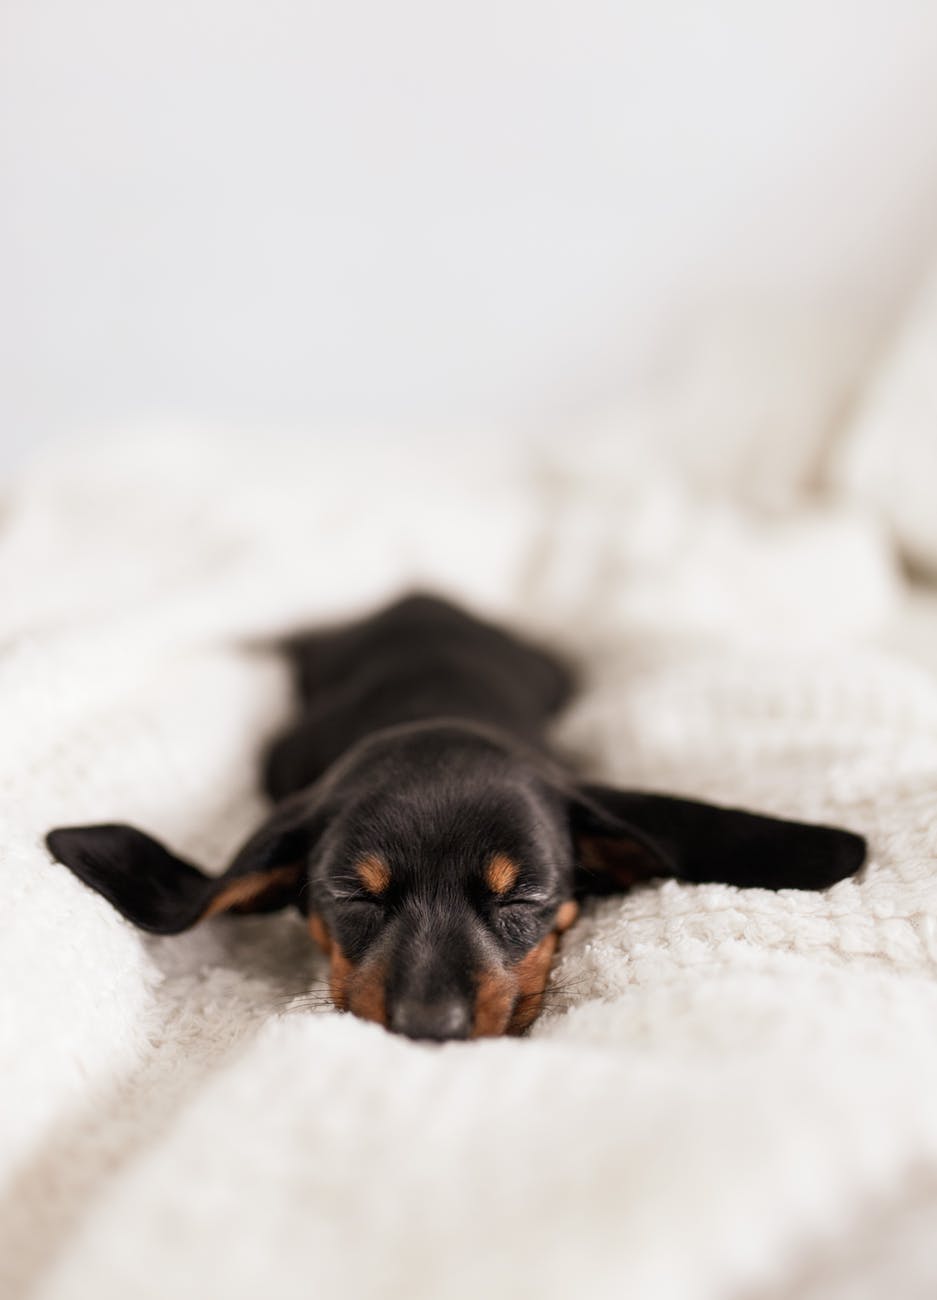 funny little dachshund puppy sleeping on cozy sofa